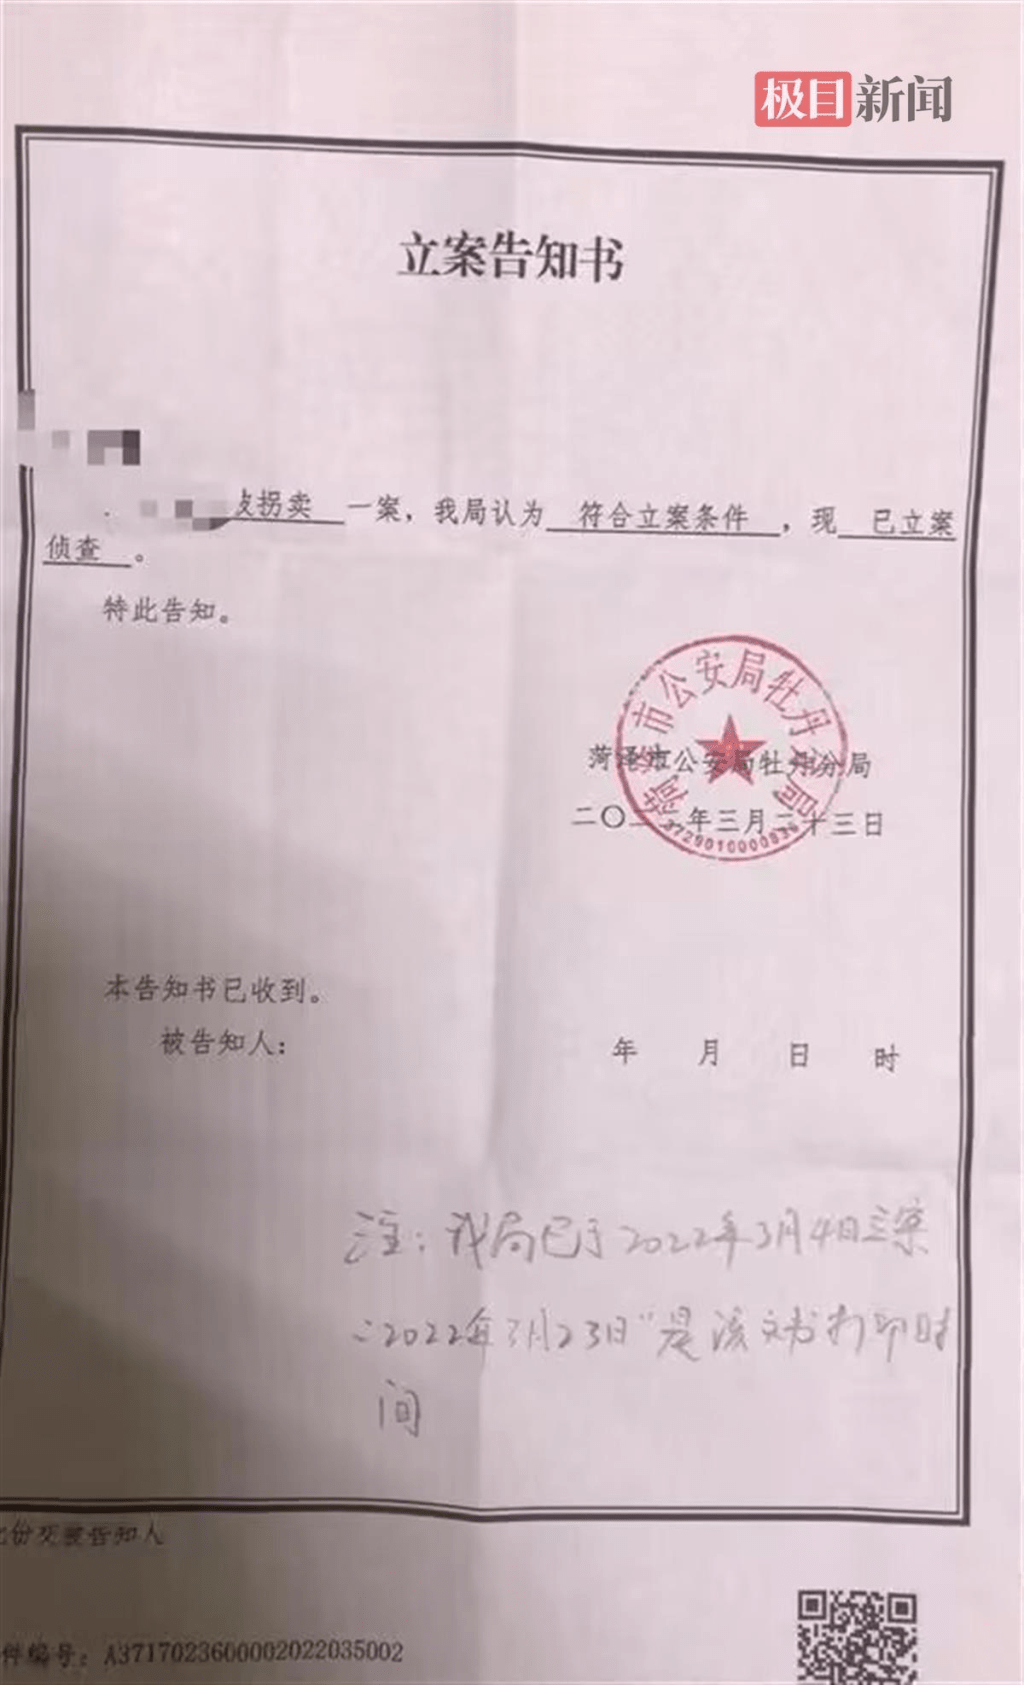 2022年3月初，郭麗決定追究當年拐賣她的人販子的責任。菏澤警方立案偵查此案。